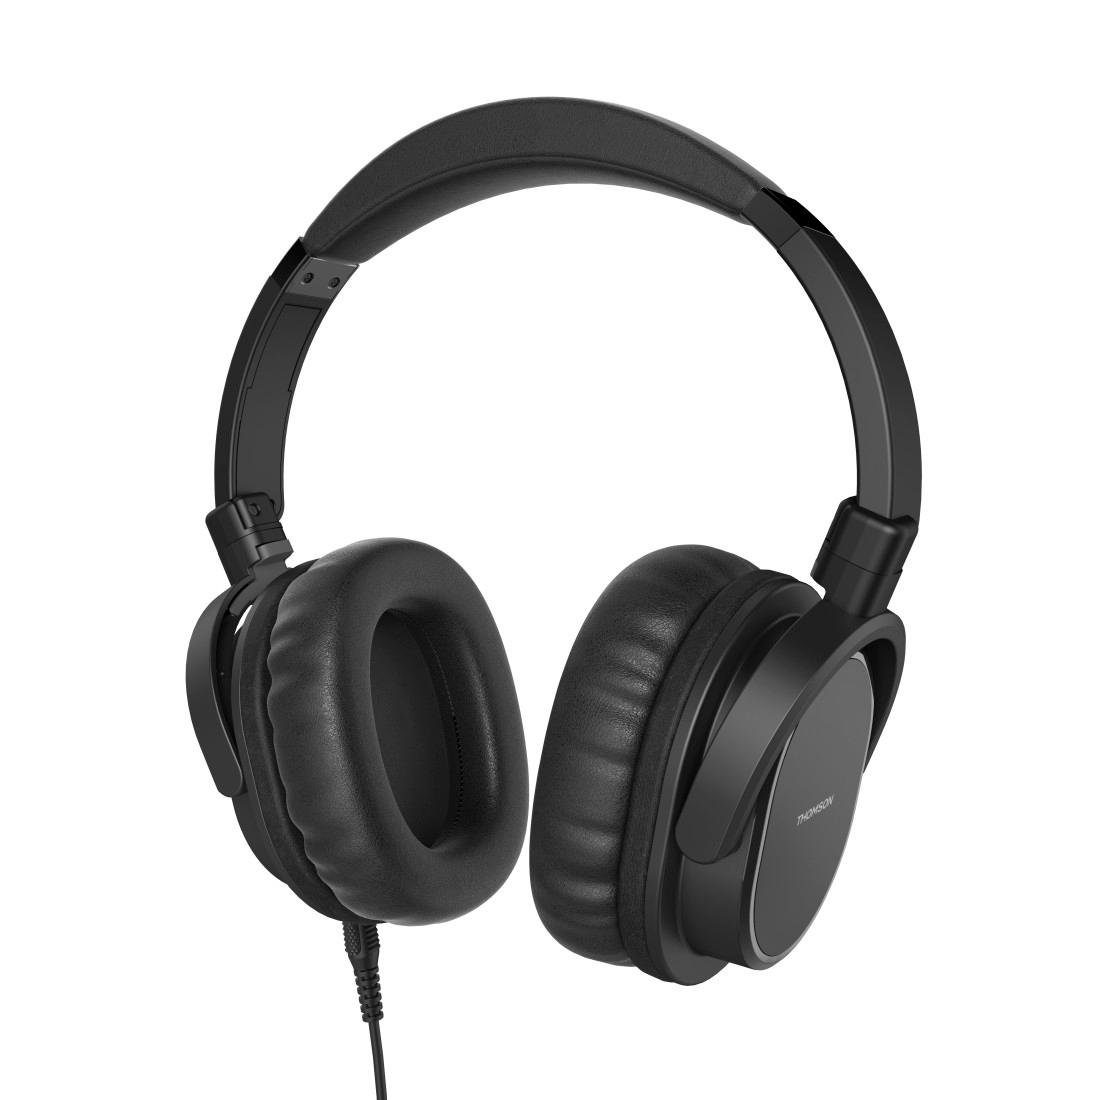 Thomson TV Headset Over-Ear mit Mikrofon, Seniorenkopfhörer, langes Kabel On-Ear-Kopfhörer (2 Lautstärkeregler, gepolsterte Ohrmuscheln und Kopfbügel)